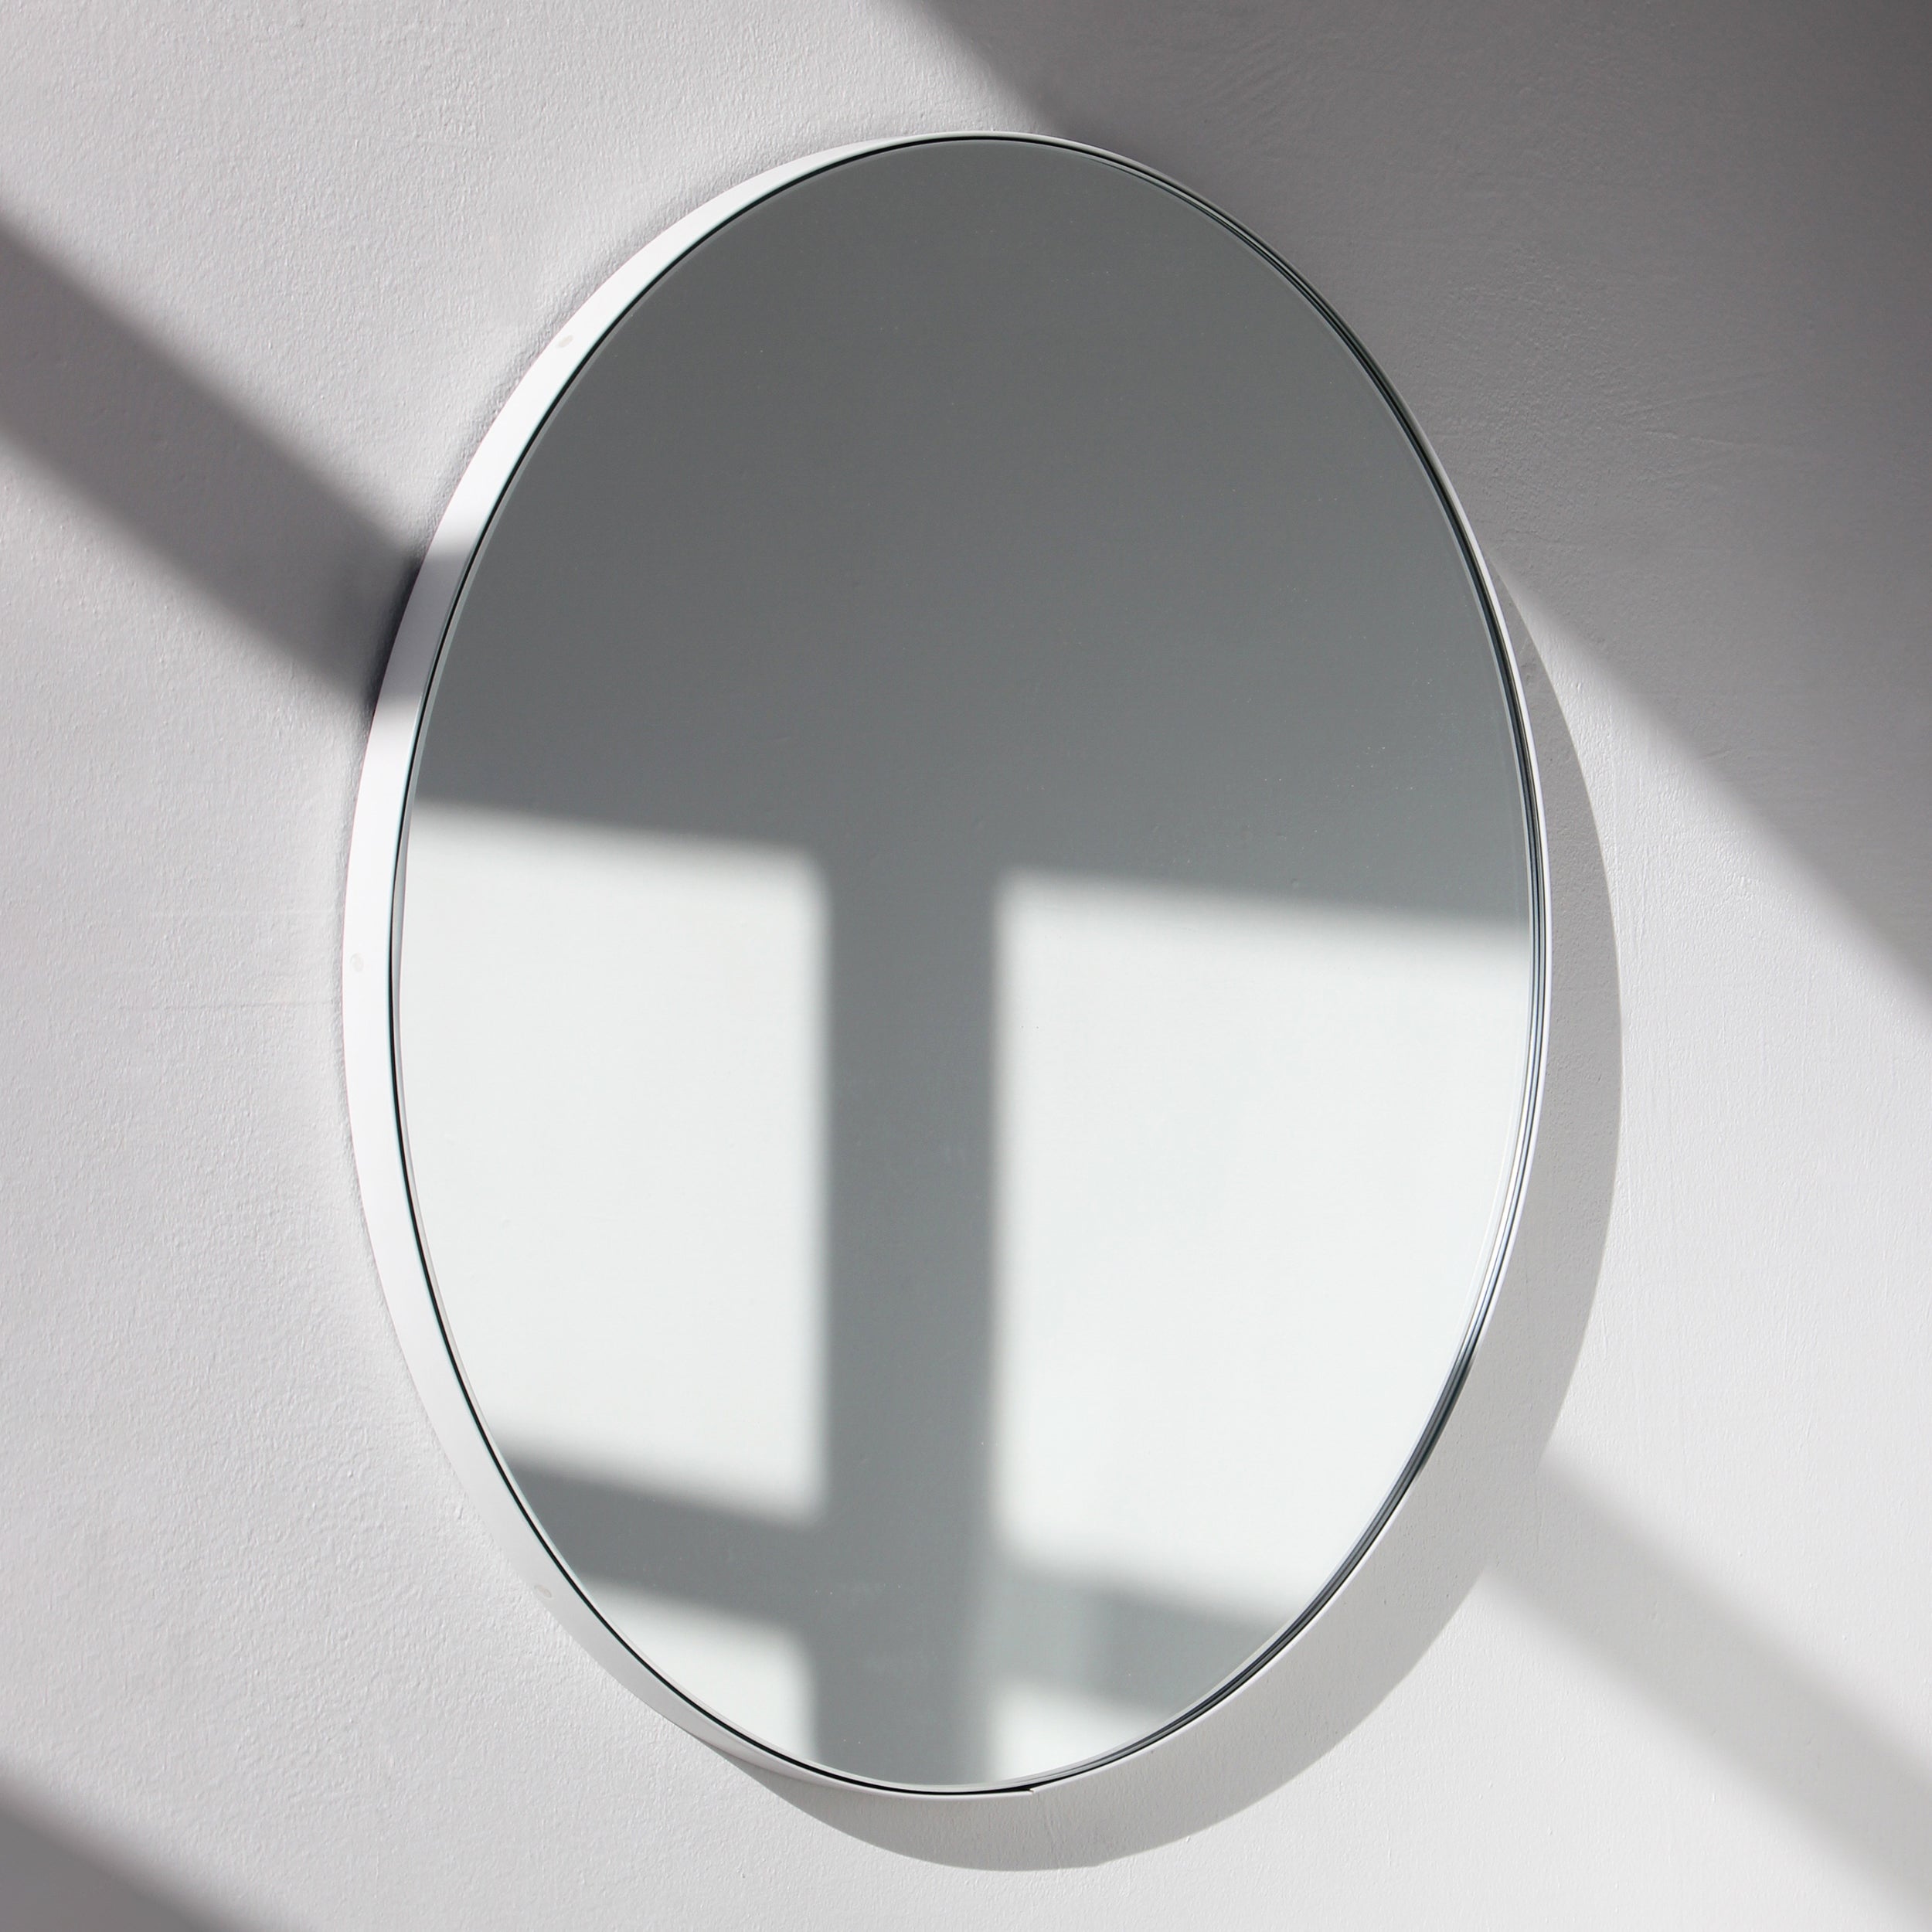 Orbis Round Modern Mirror with White Frame, Customisable, XL